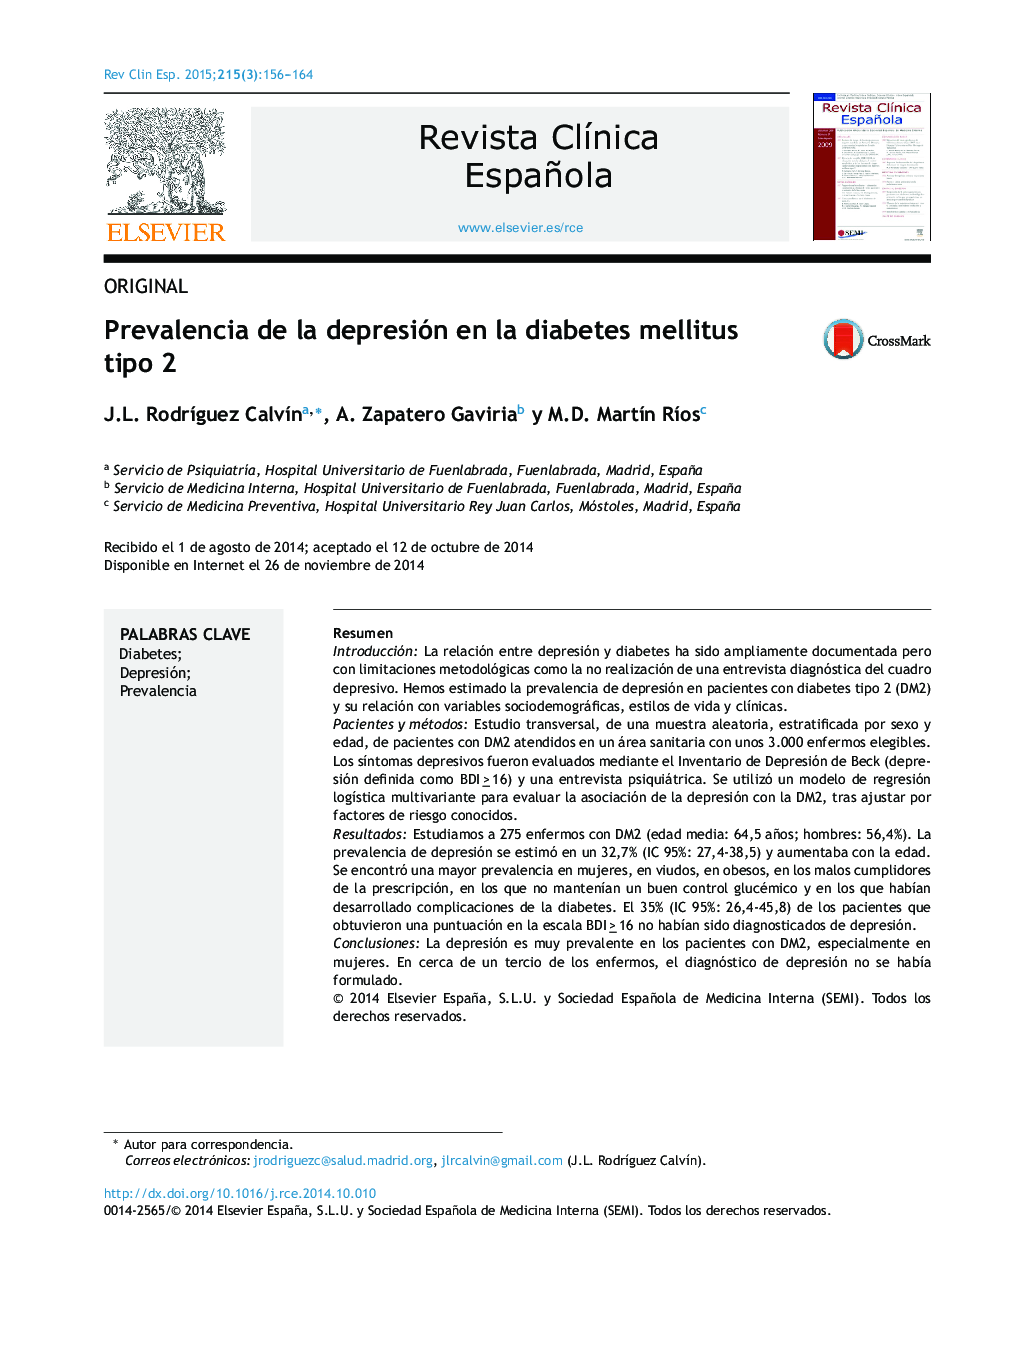 Prevalencia de la depresión en la diabetes mellitus tipo 2